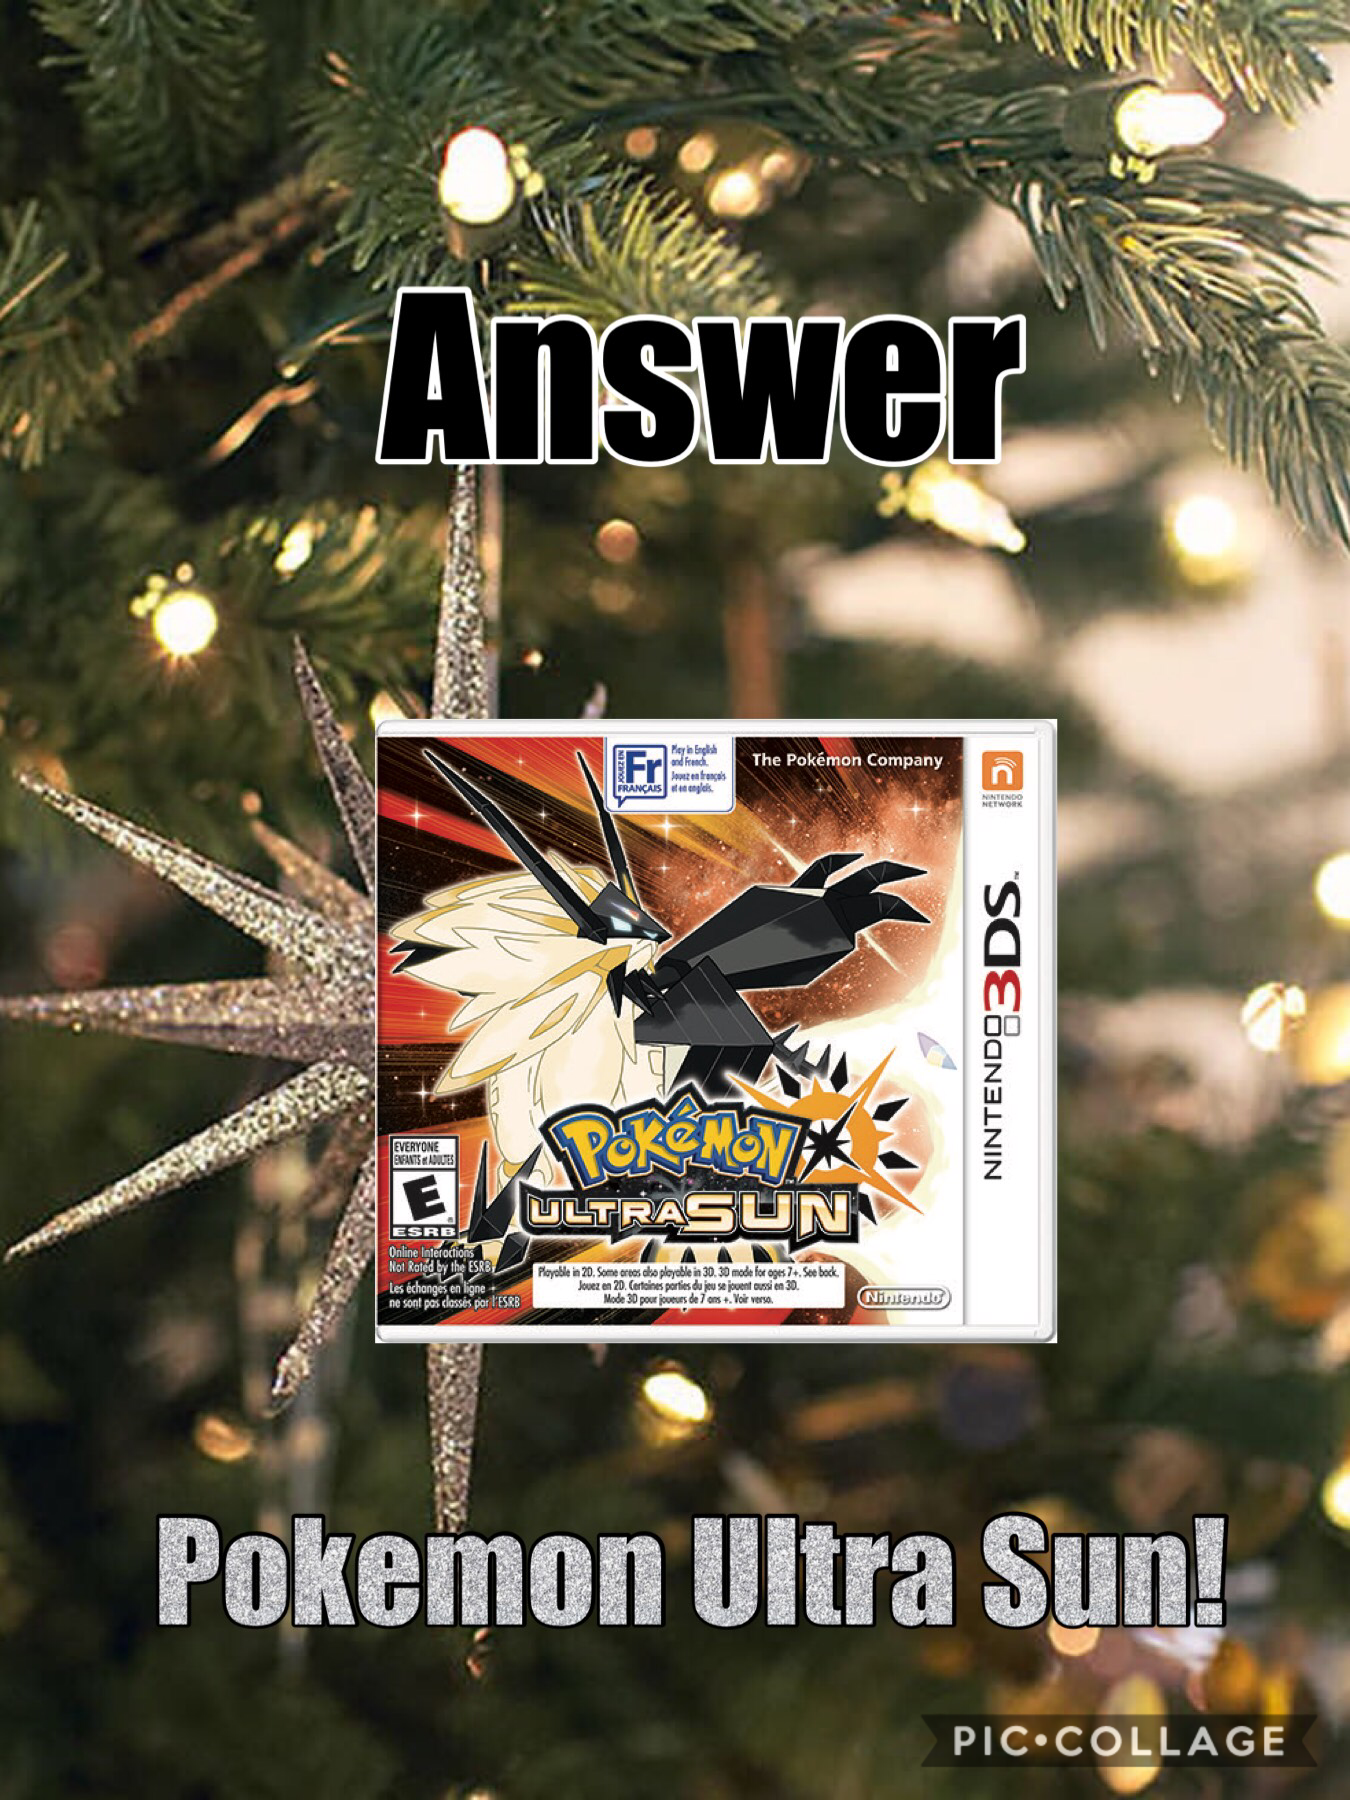 I got Pokemon Ultra Sun for Christmas!